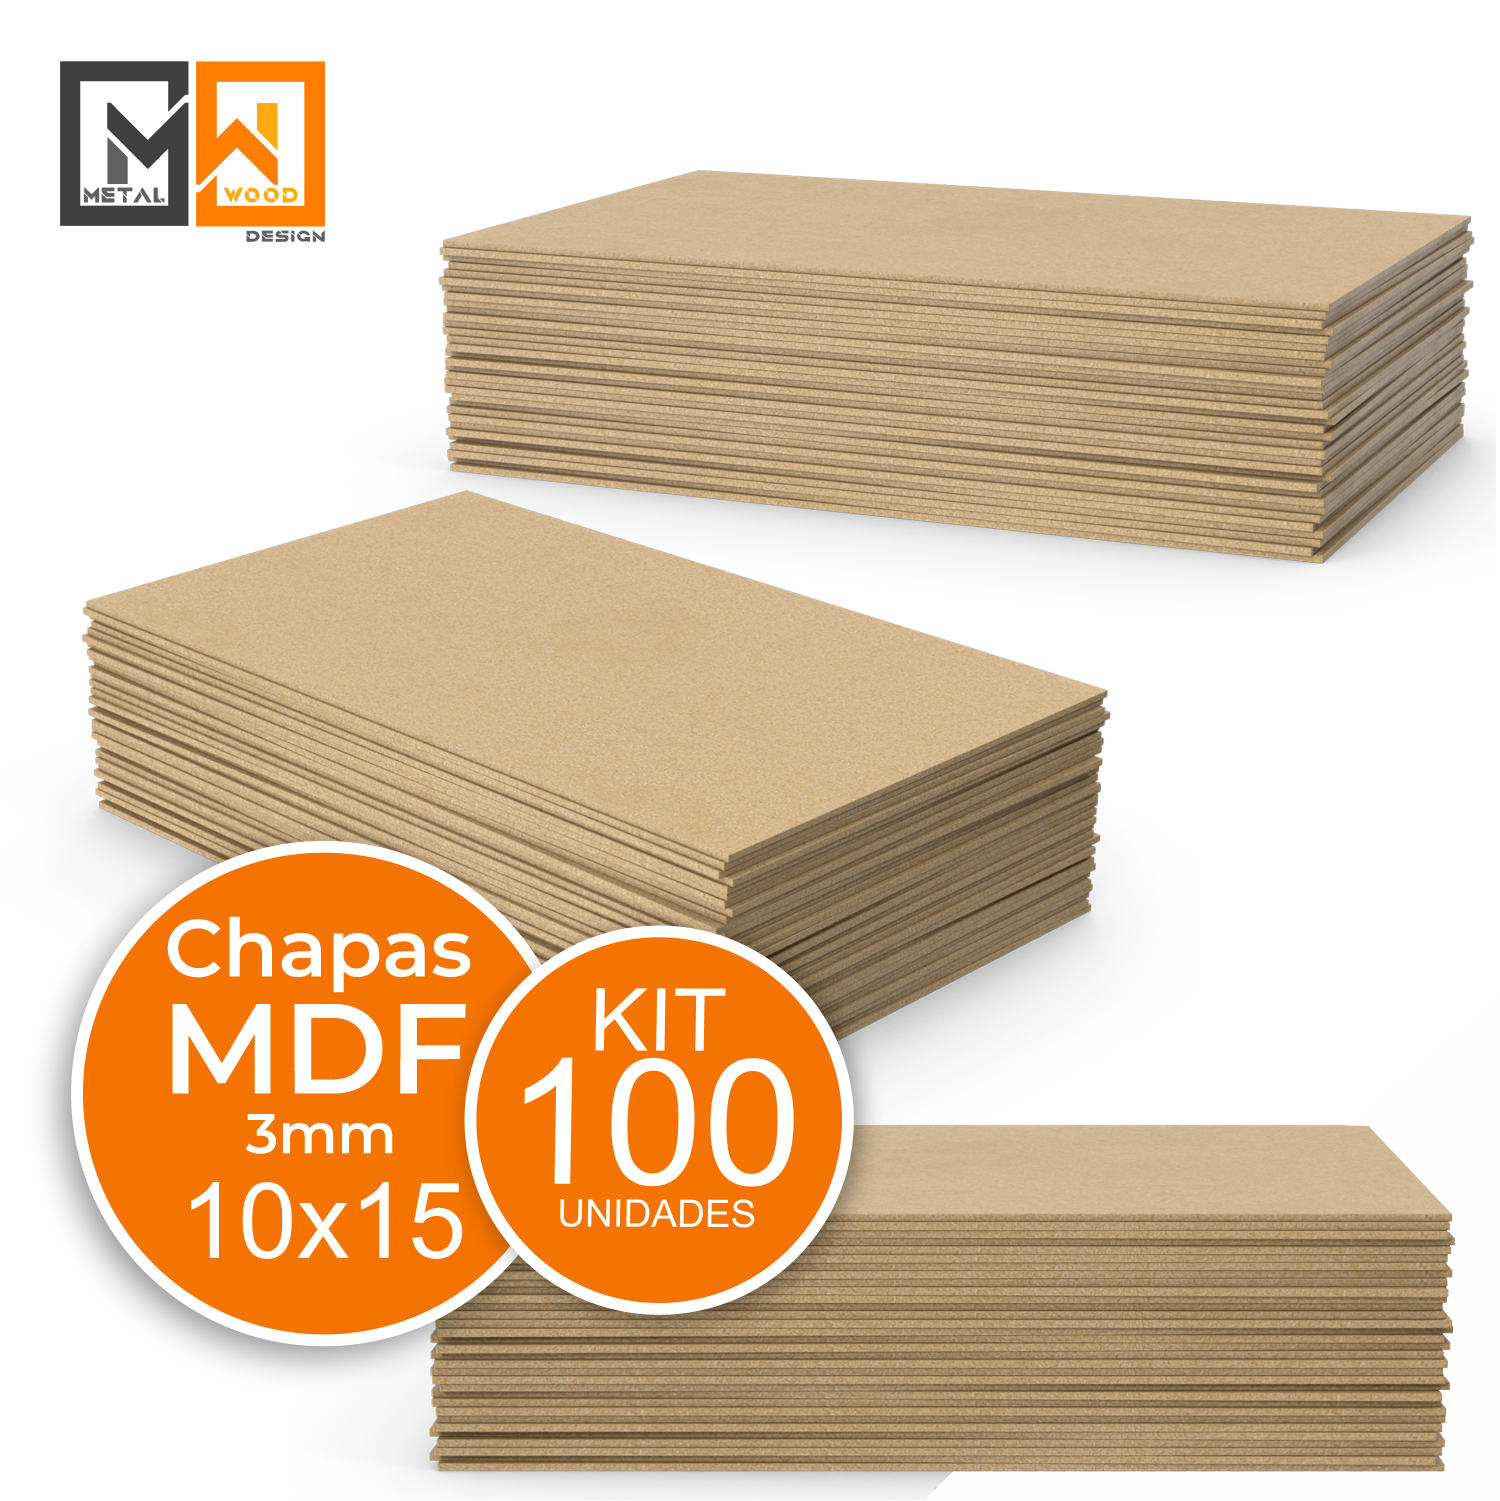 Chapa Mdf Cru 10x15 Kit 100 3mm Placas Artesanato Decoração - 4